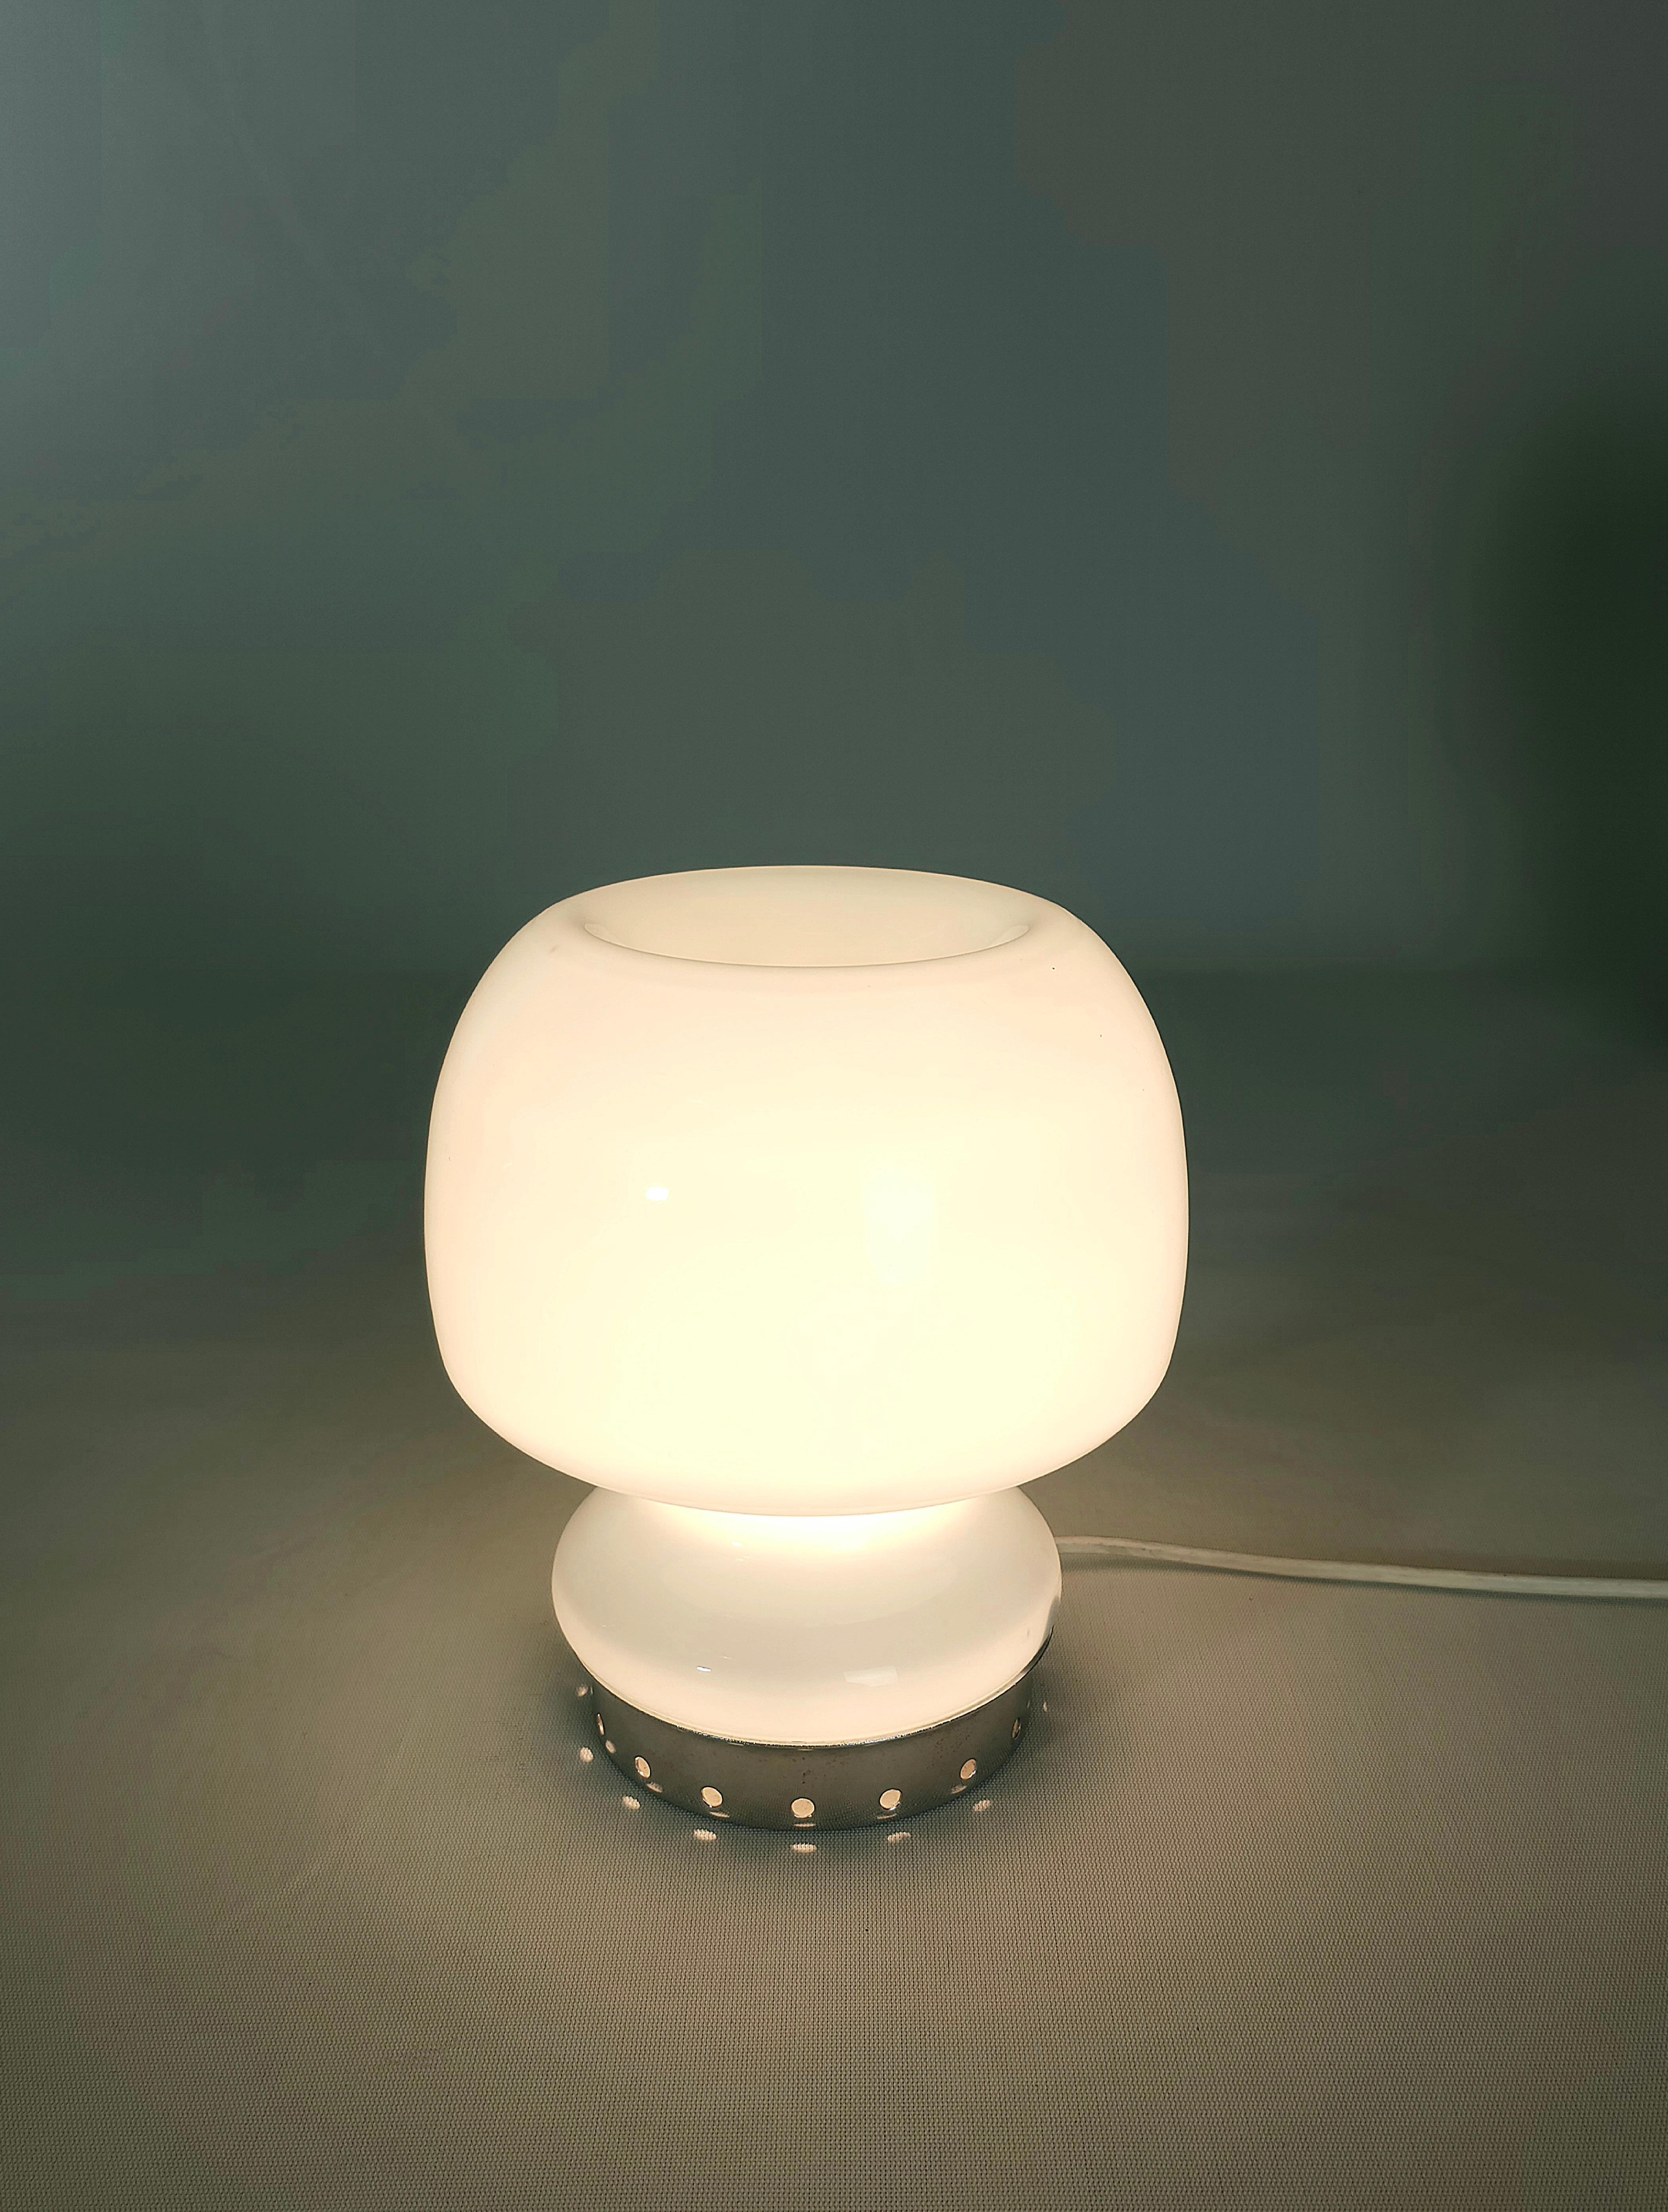 20th Century Table Lamp Milk Glass Chromed Metal Midcentury Modern Italian Design 1960s For Sale